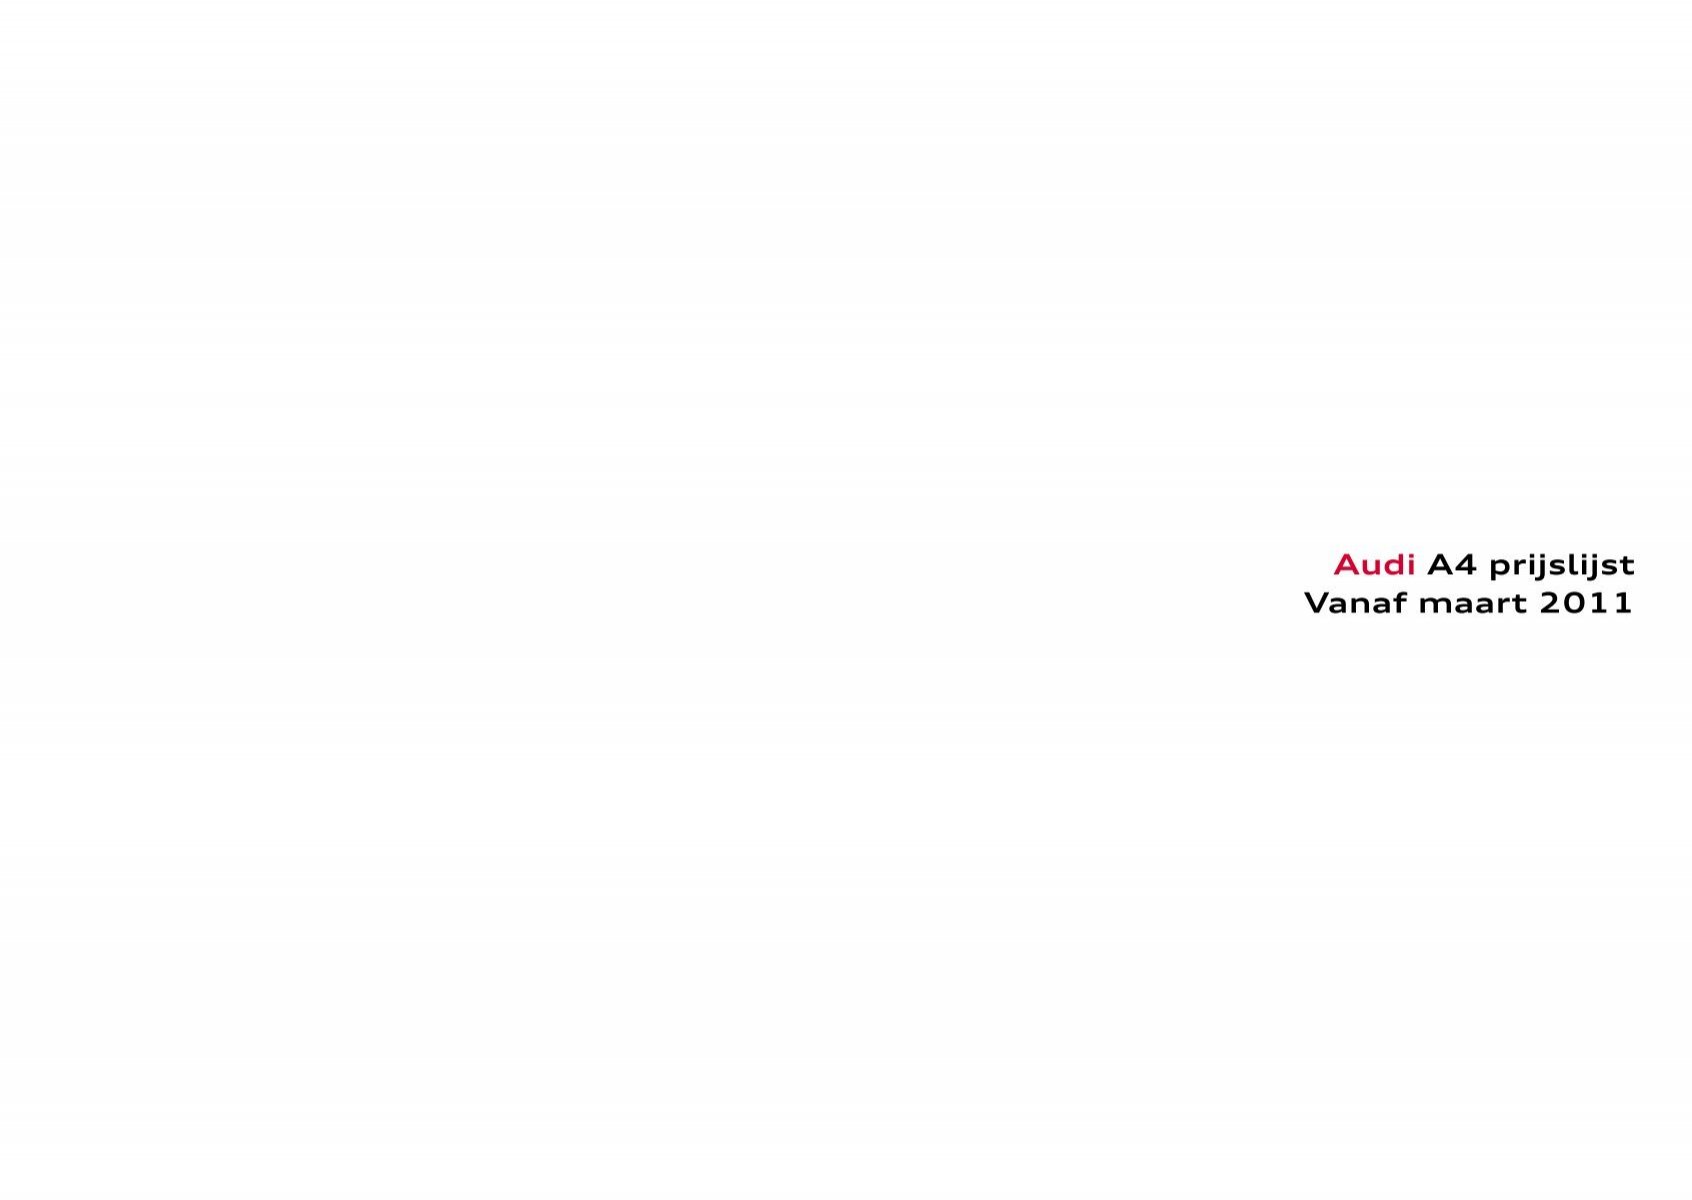 Wijzigingen van draaipunt Spin Prijslijst Audi A4 per 01-03-2011 .pdf - Fleetwise